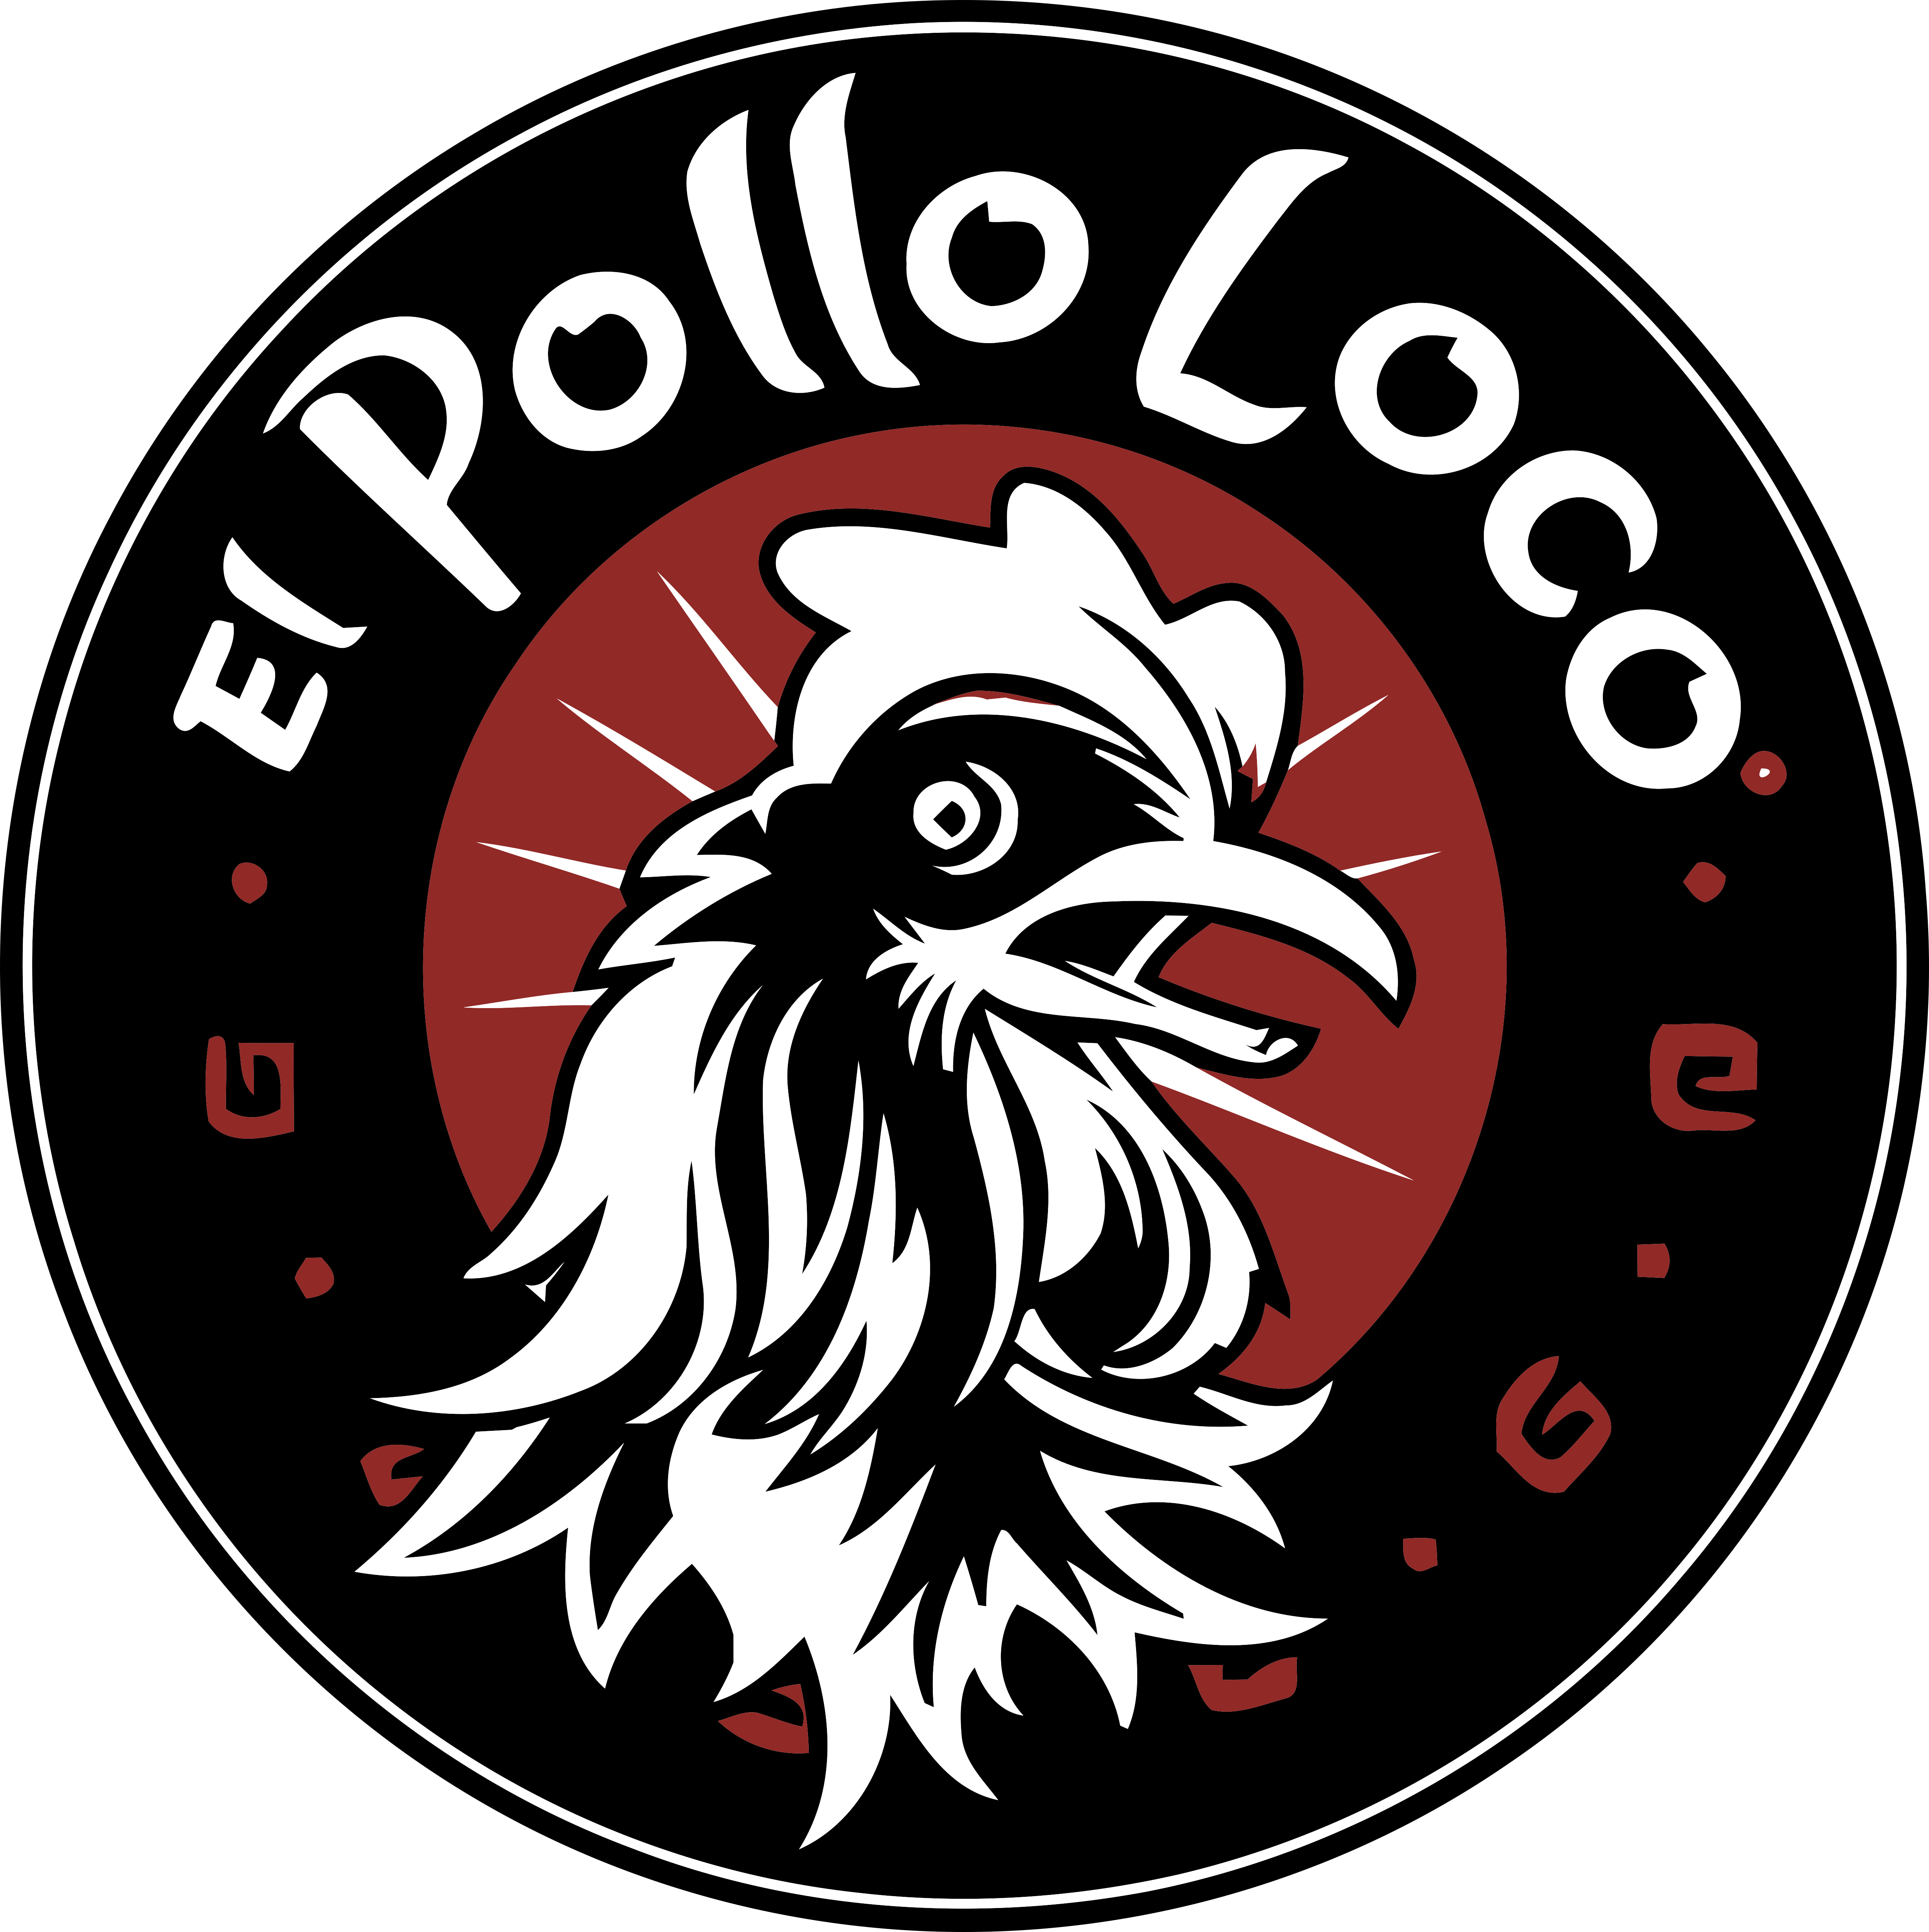 El top 48 imagen el polo logo - Abzlocal.mx